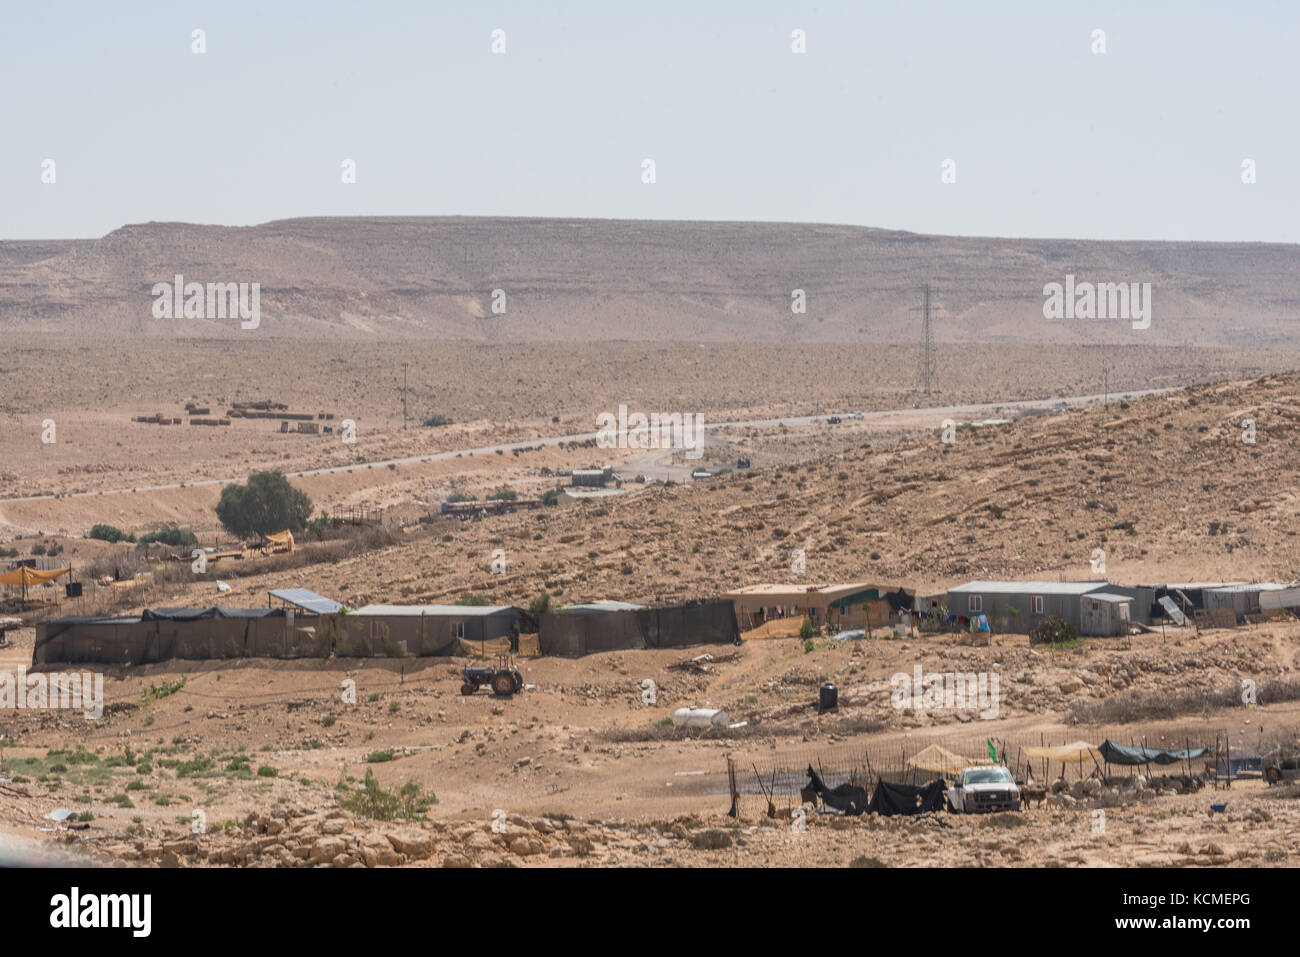 Bedouin camp in the Negev desert, Israel Stock Photo